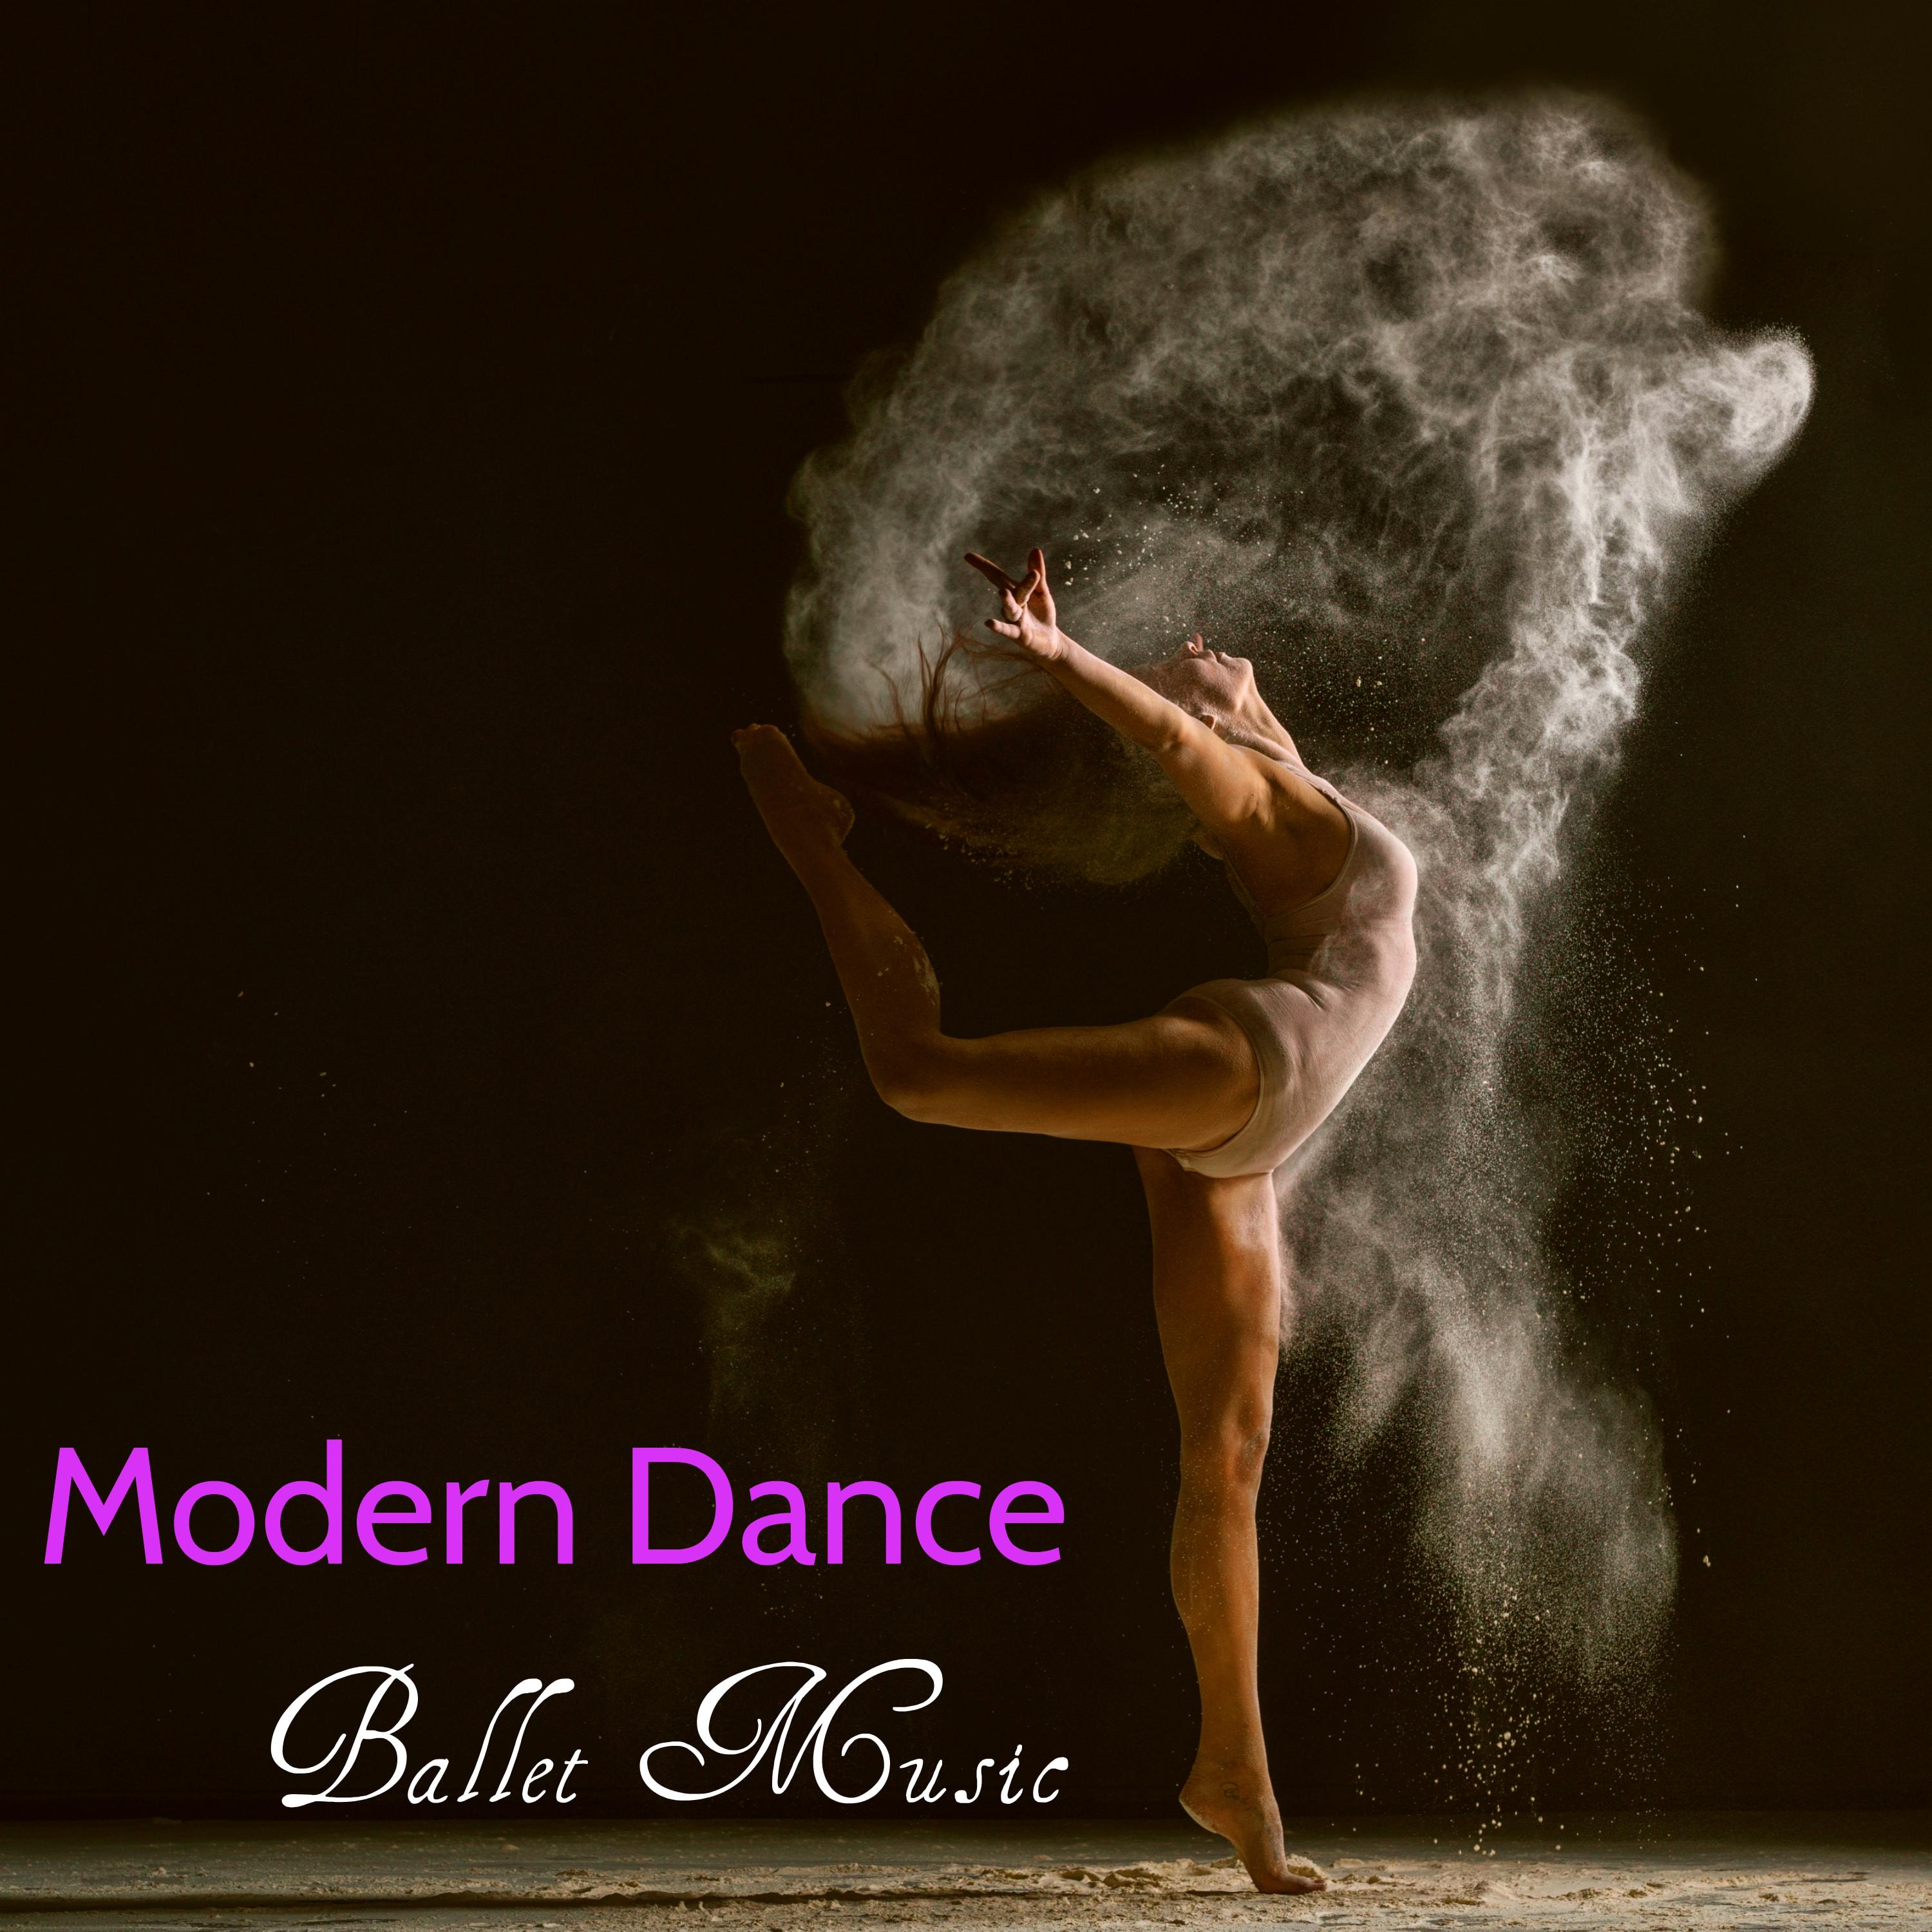 Free Dance - Lounge Music for Modern Dance Ballet